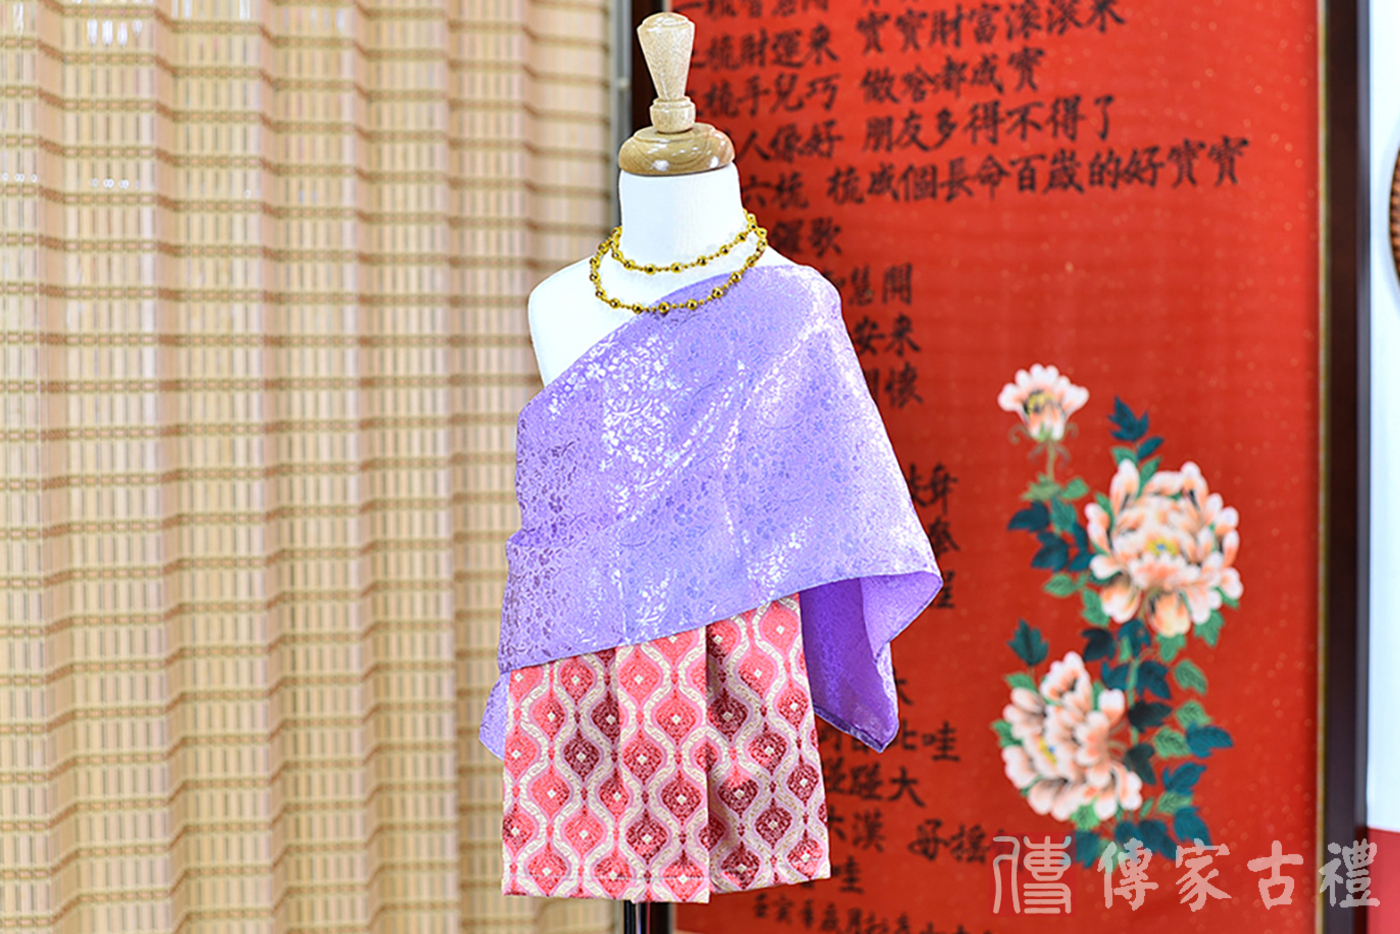 2024-02-22小孩皇室泰服古裝禮服。紫色的紋路披肩與紅色大方格狀裙裝的泰式古裝禮服。照片集